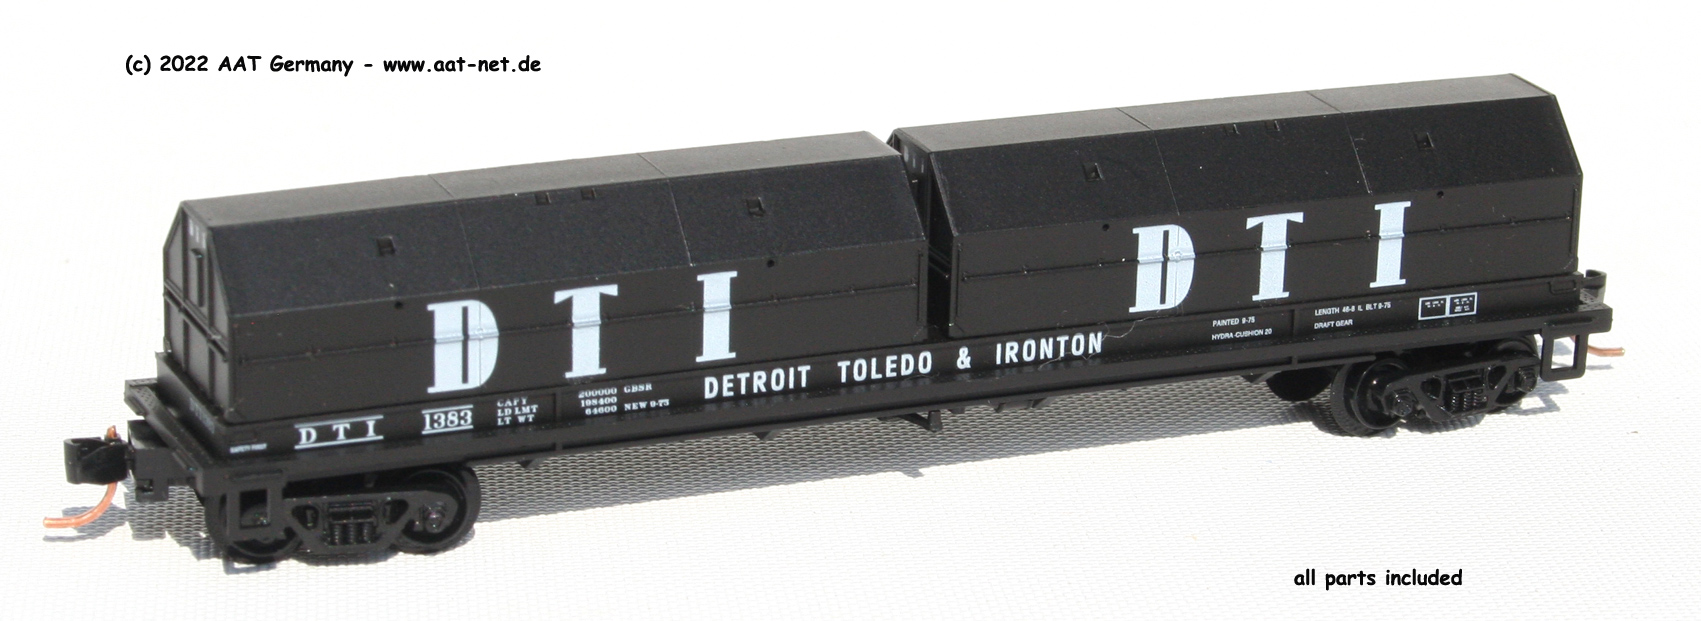 Detroit Toledo & Ironton